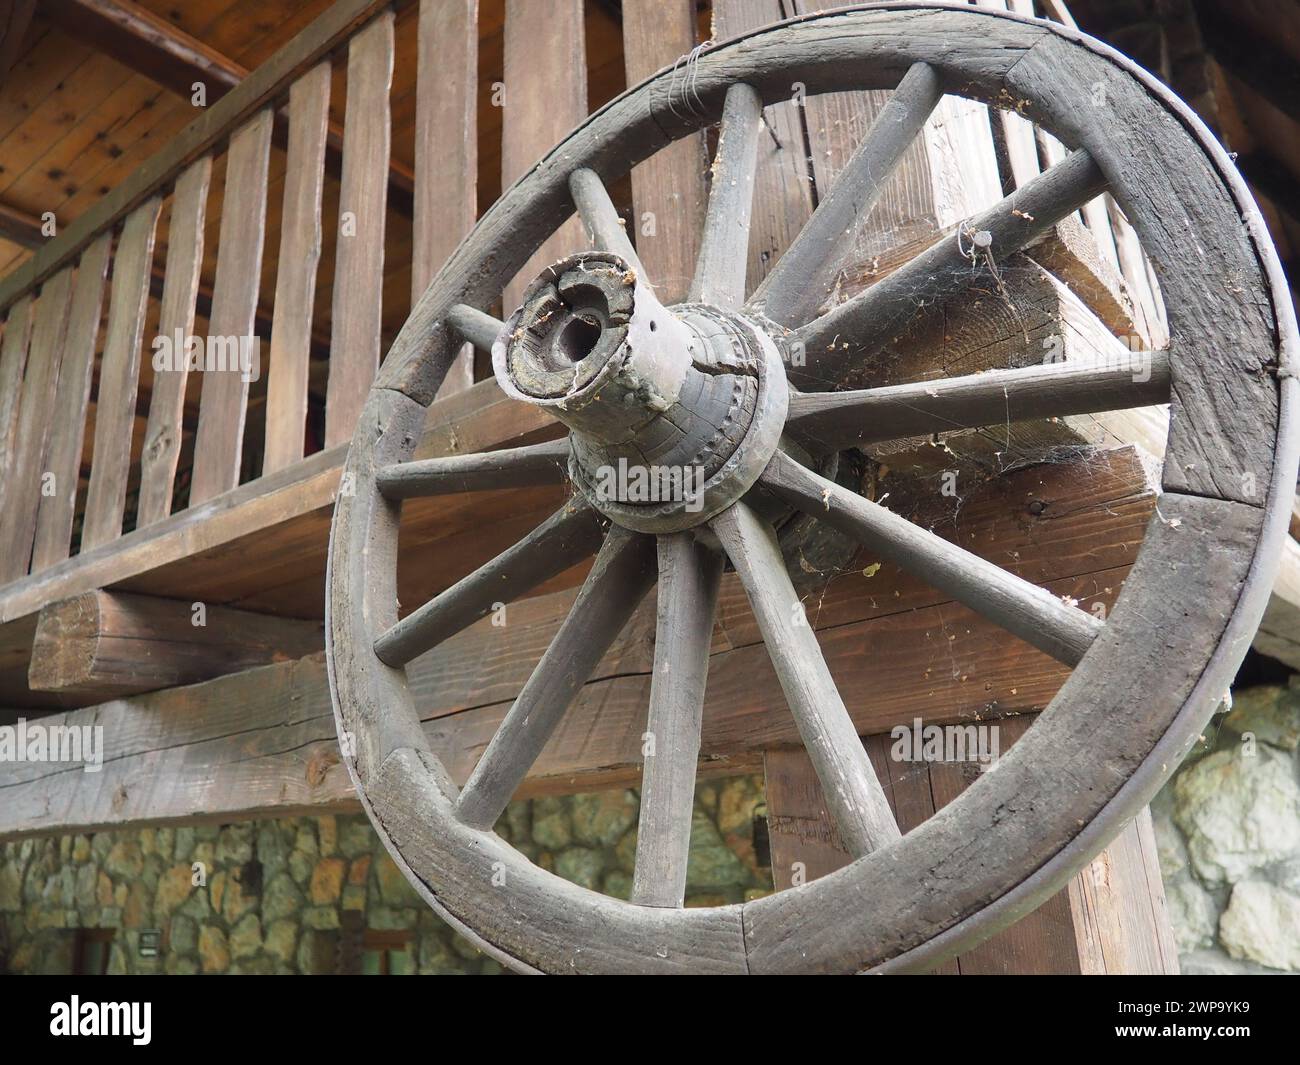 Une roue est un mobile, un disque qui tourne librement ou qui est fixé sur un axe rotatif, permettant au corps placé sur elle de rouler plutôt que de glisser. Roue en bois Banque D'Images